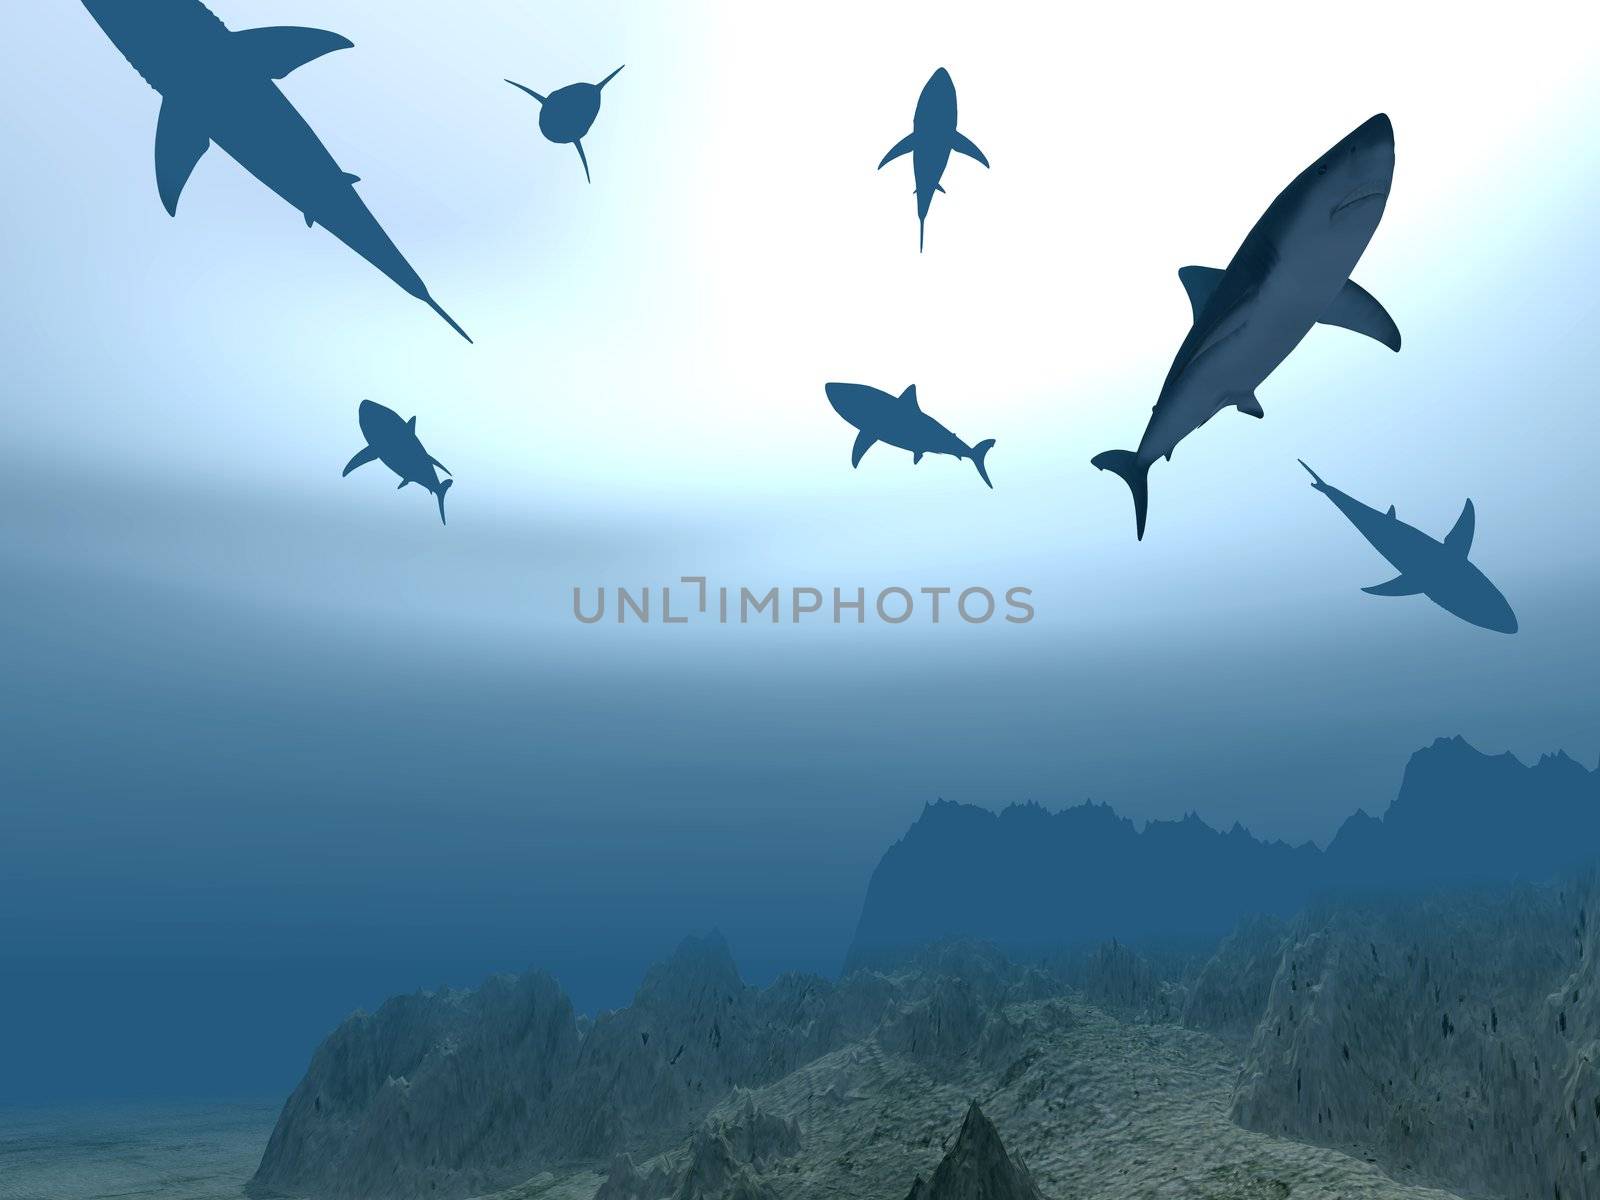 Flight of sharks by galdzer